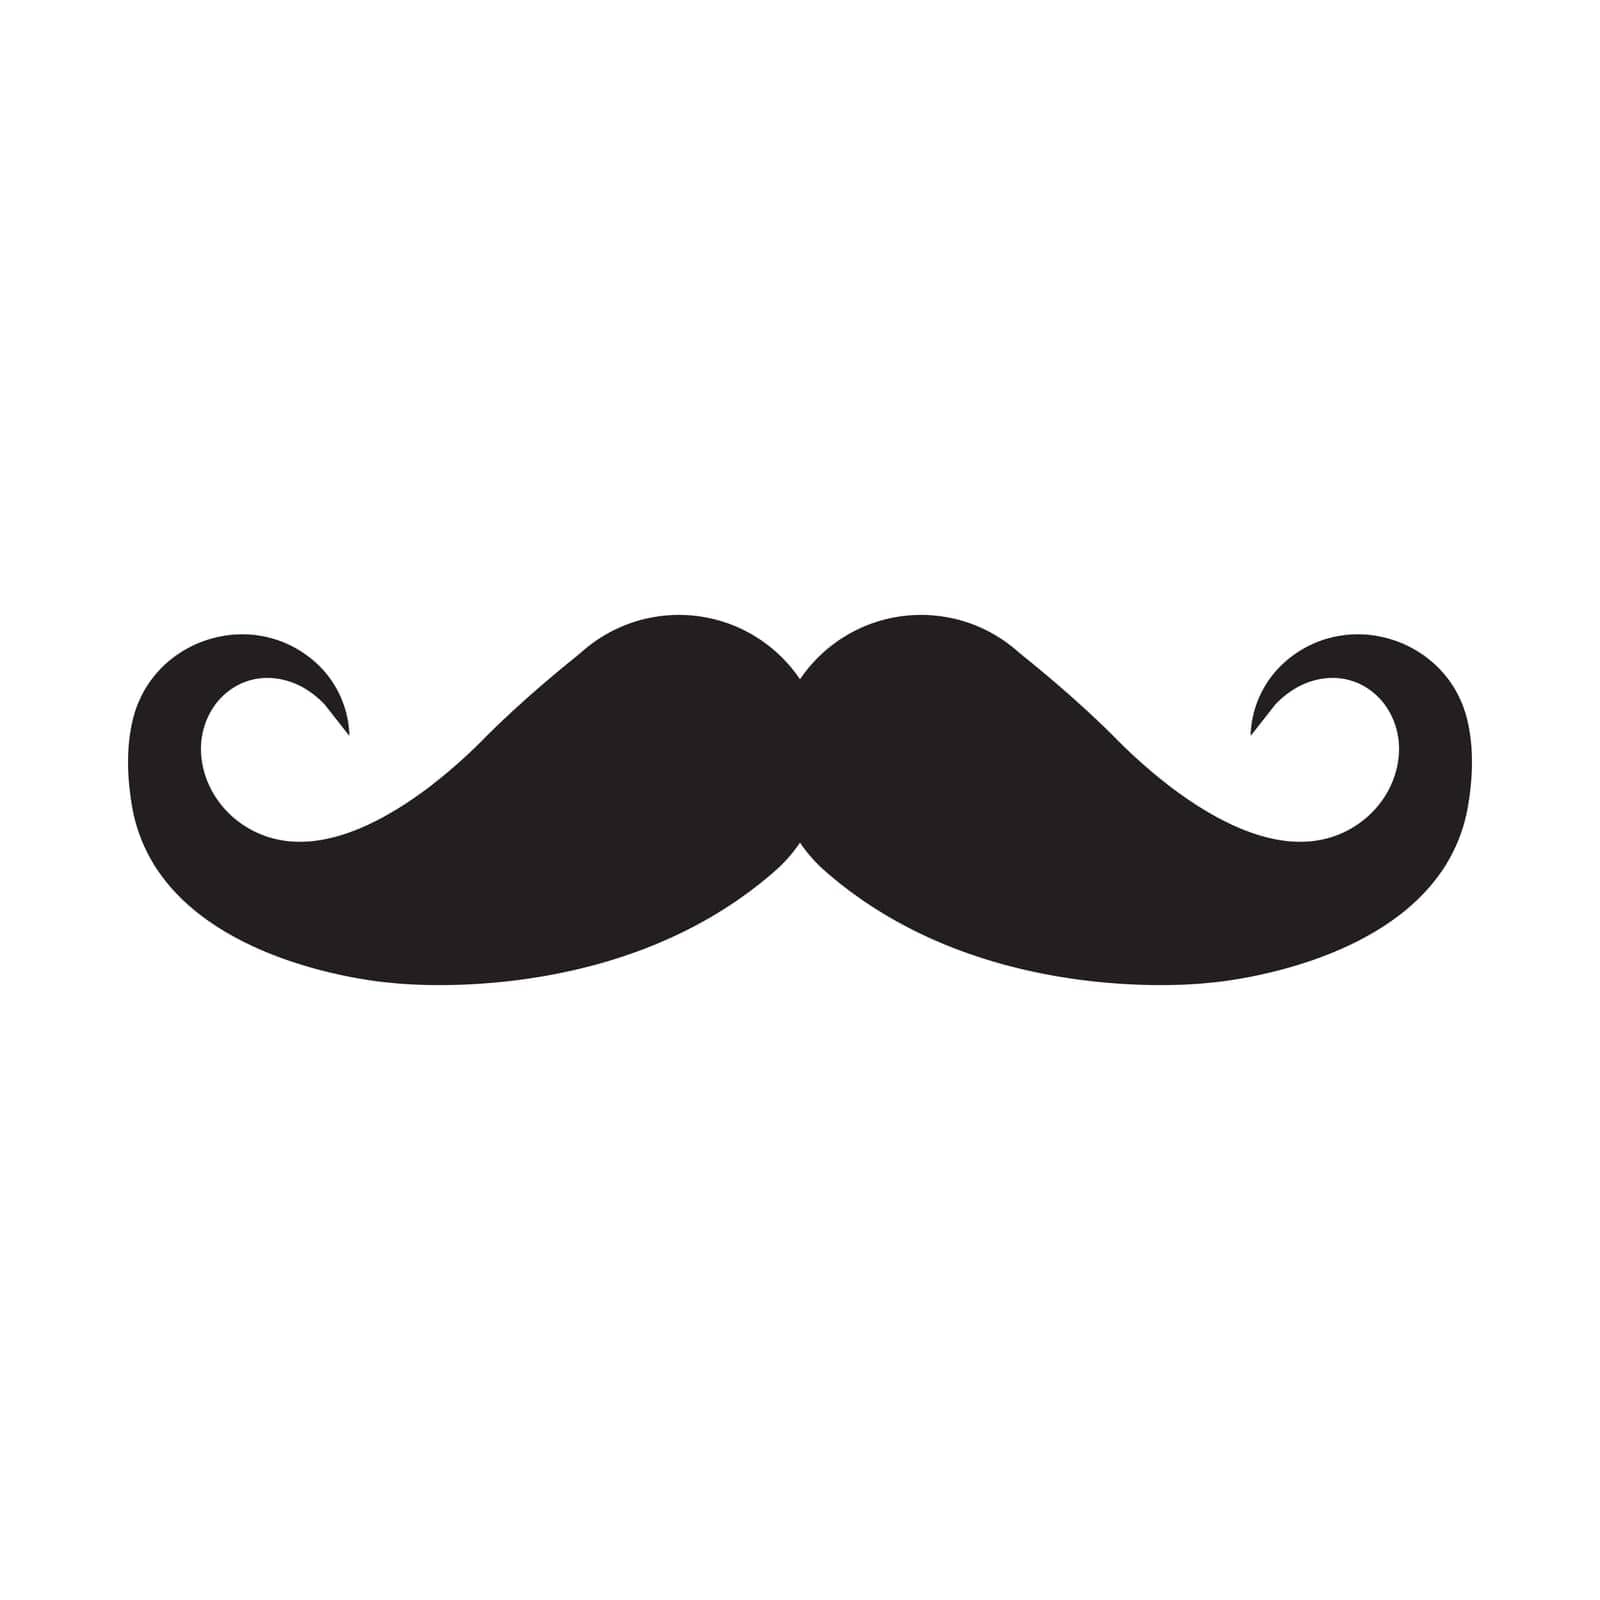 Mustache vector icon,illustration template design